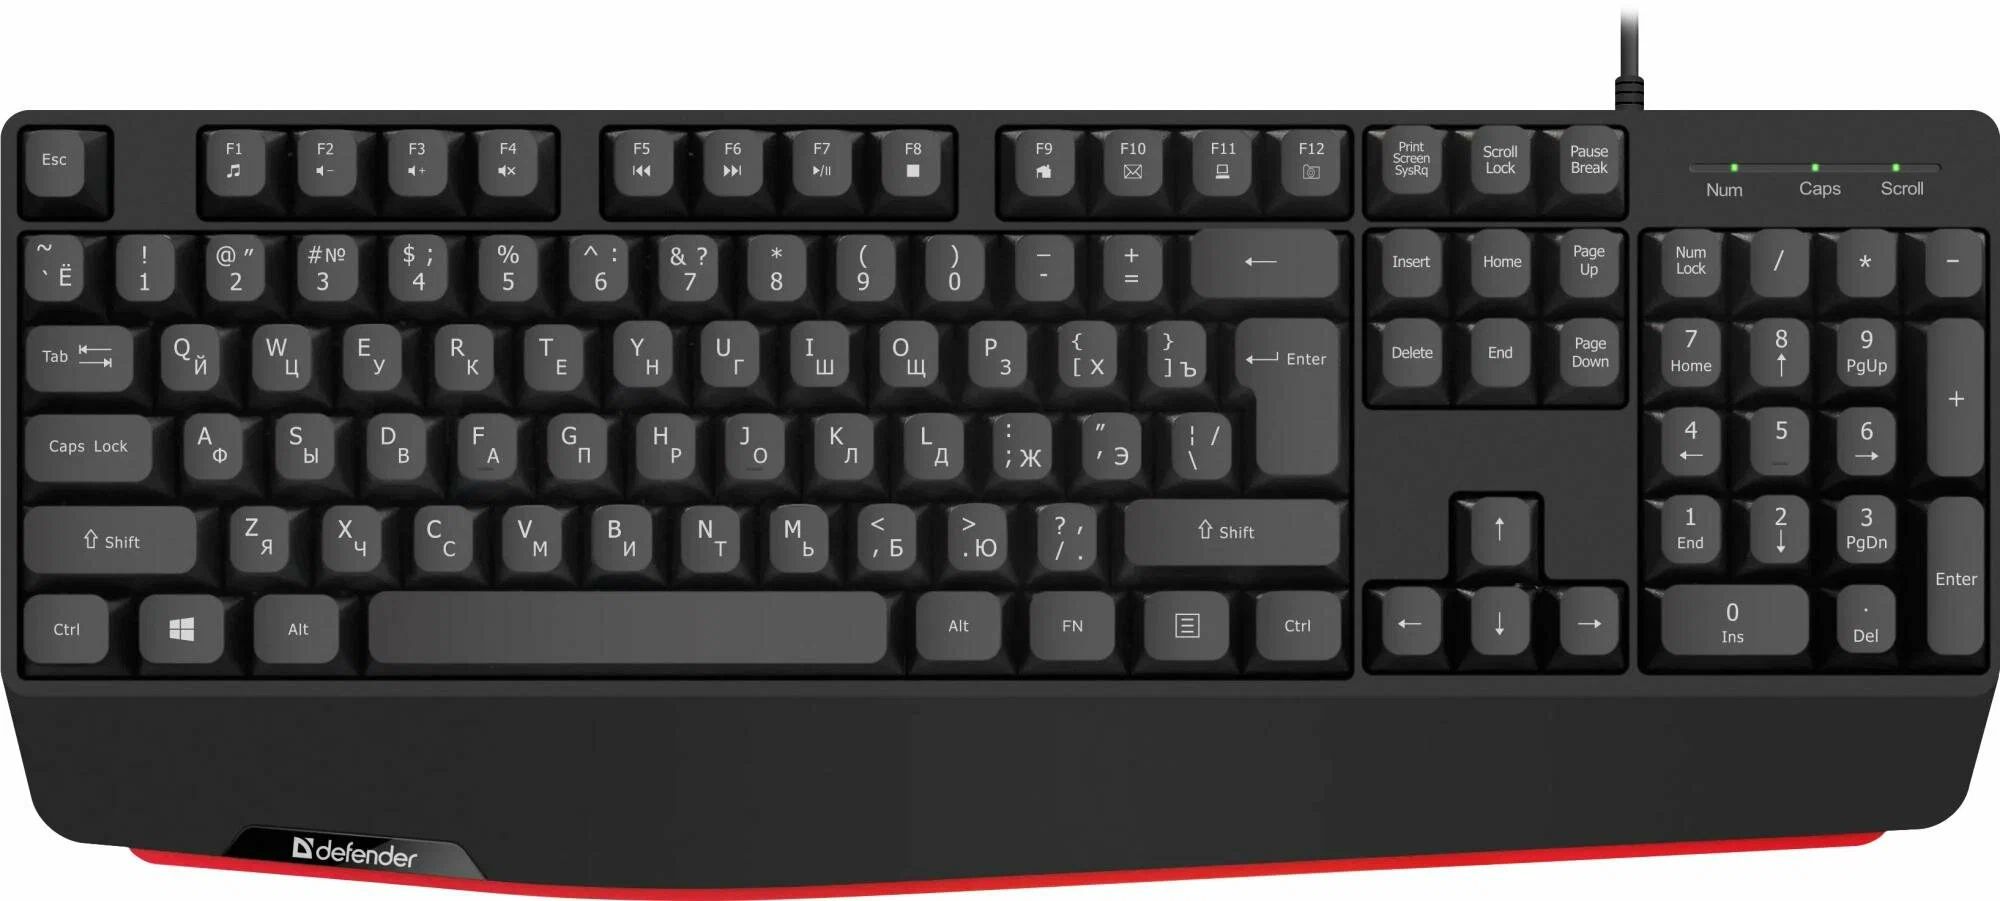 Клавиатура Defender Atom HB-546 RU, черный (45546) клавиатура ovy sp us испанская и английская для ноутбука samsung np400b np400b4b np400b4c np600b4b np200b4b сменные клавиатуры для пк